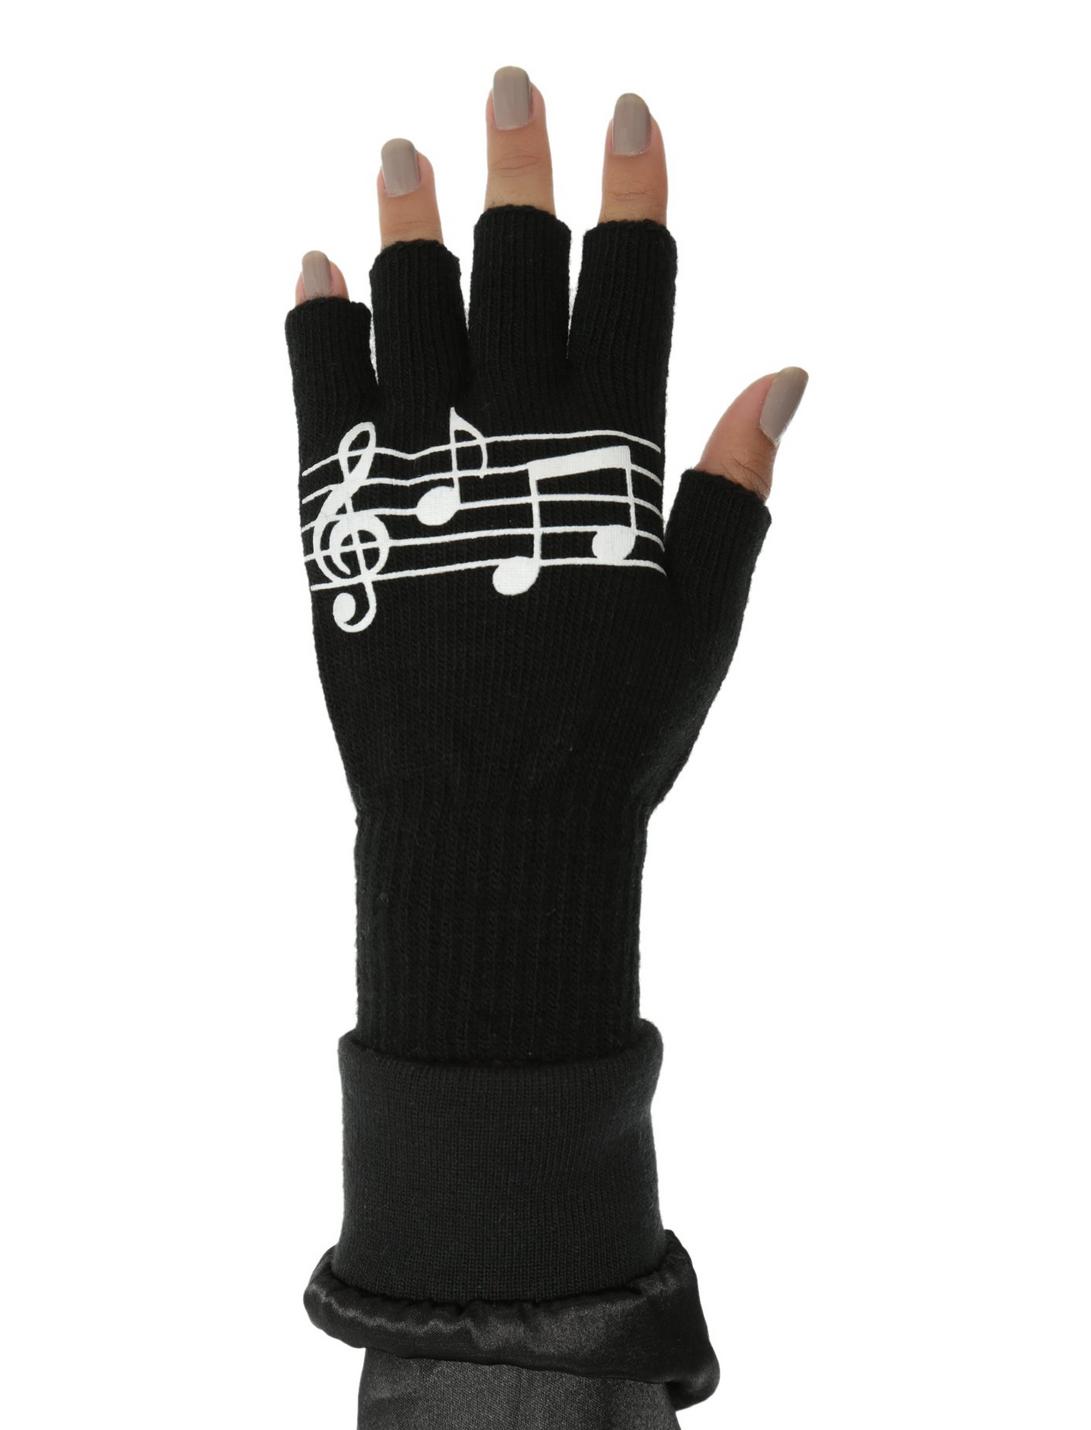 Black & White Music Note Fingerless Gloves, , hi-res